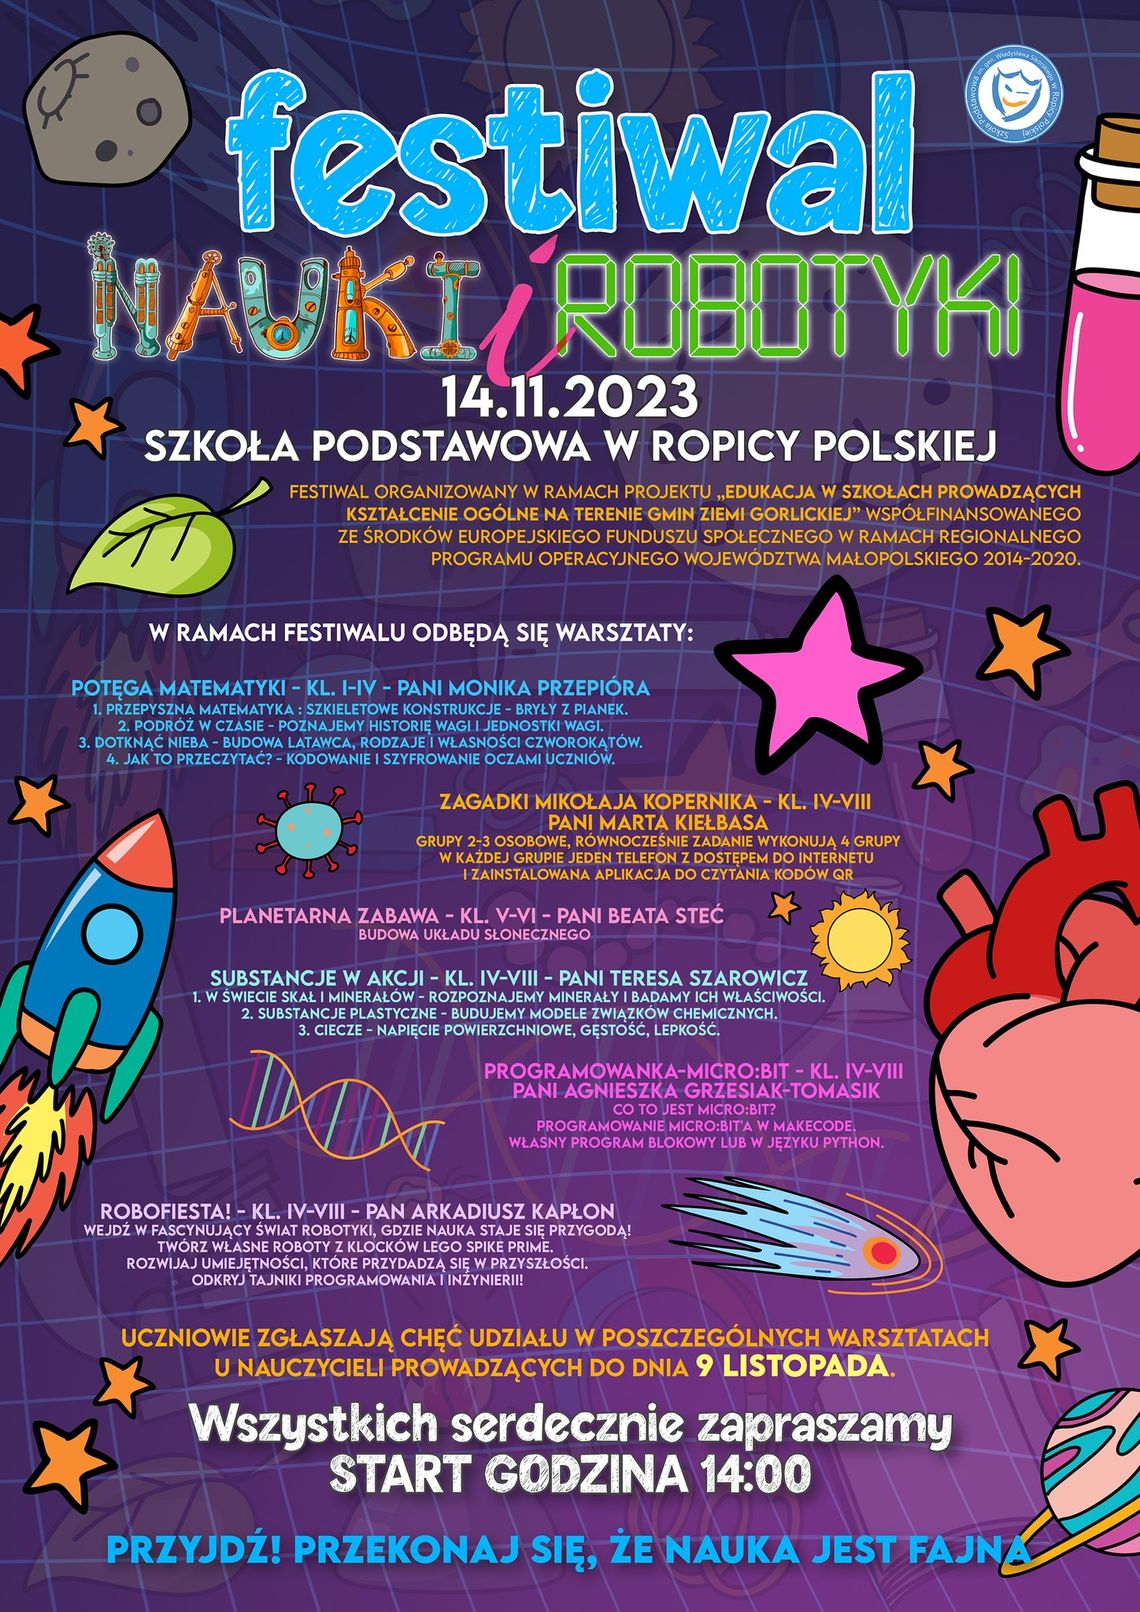 Festiwal Nauki i Robotyki w Ropicy Polskiej | halogorlice.info